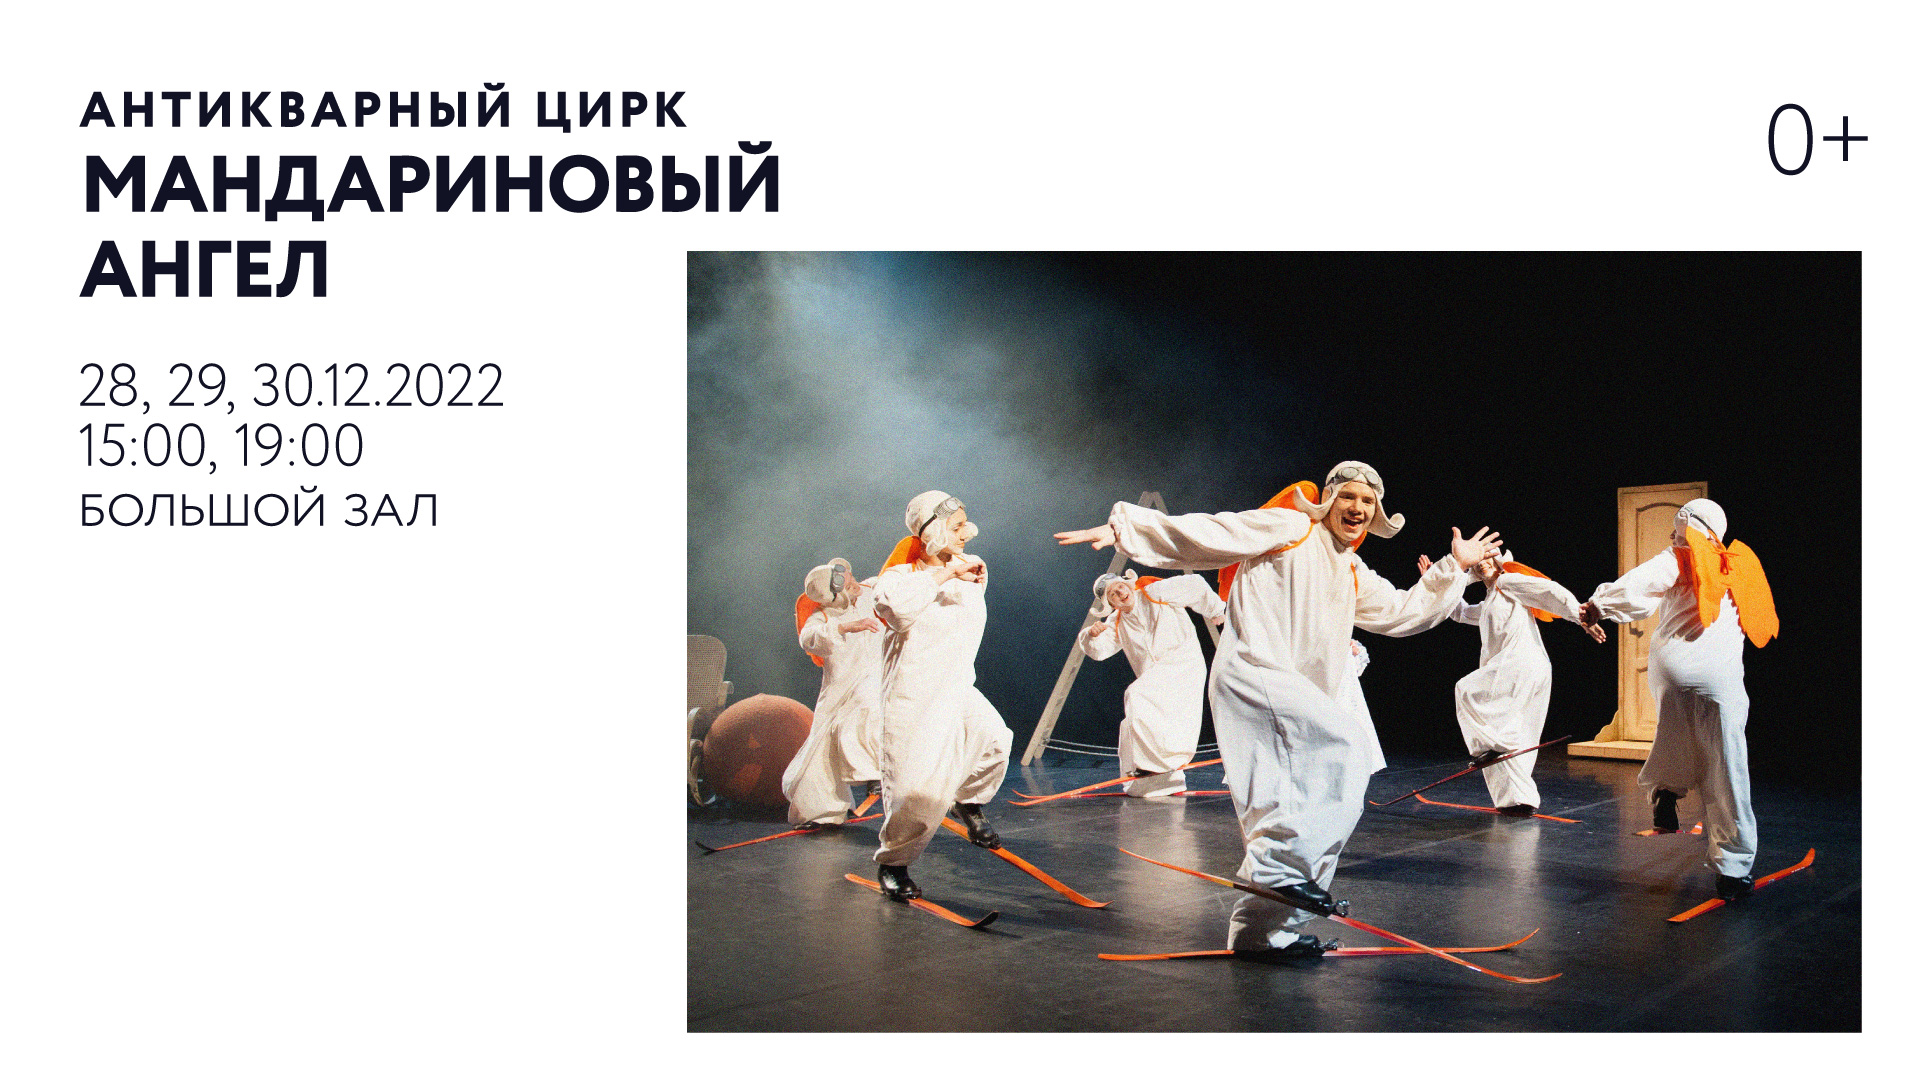 Новогодний театрально-цирковой спектакль «Мандариновый ангел»